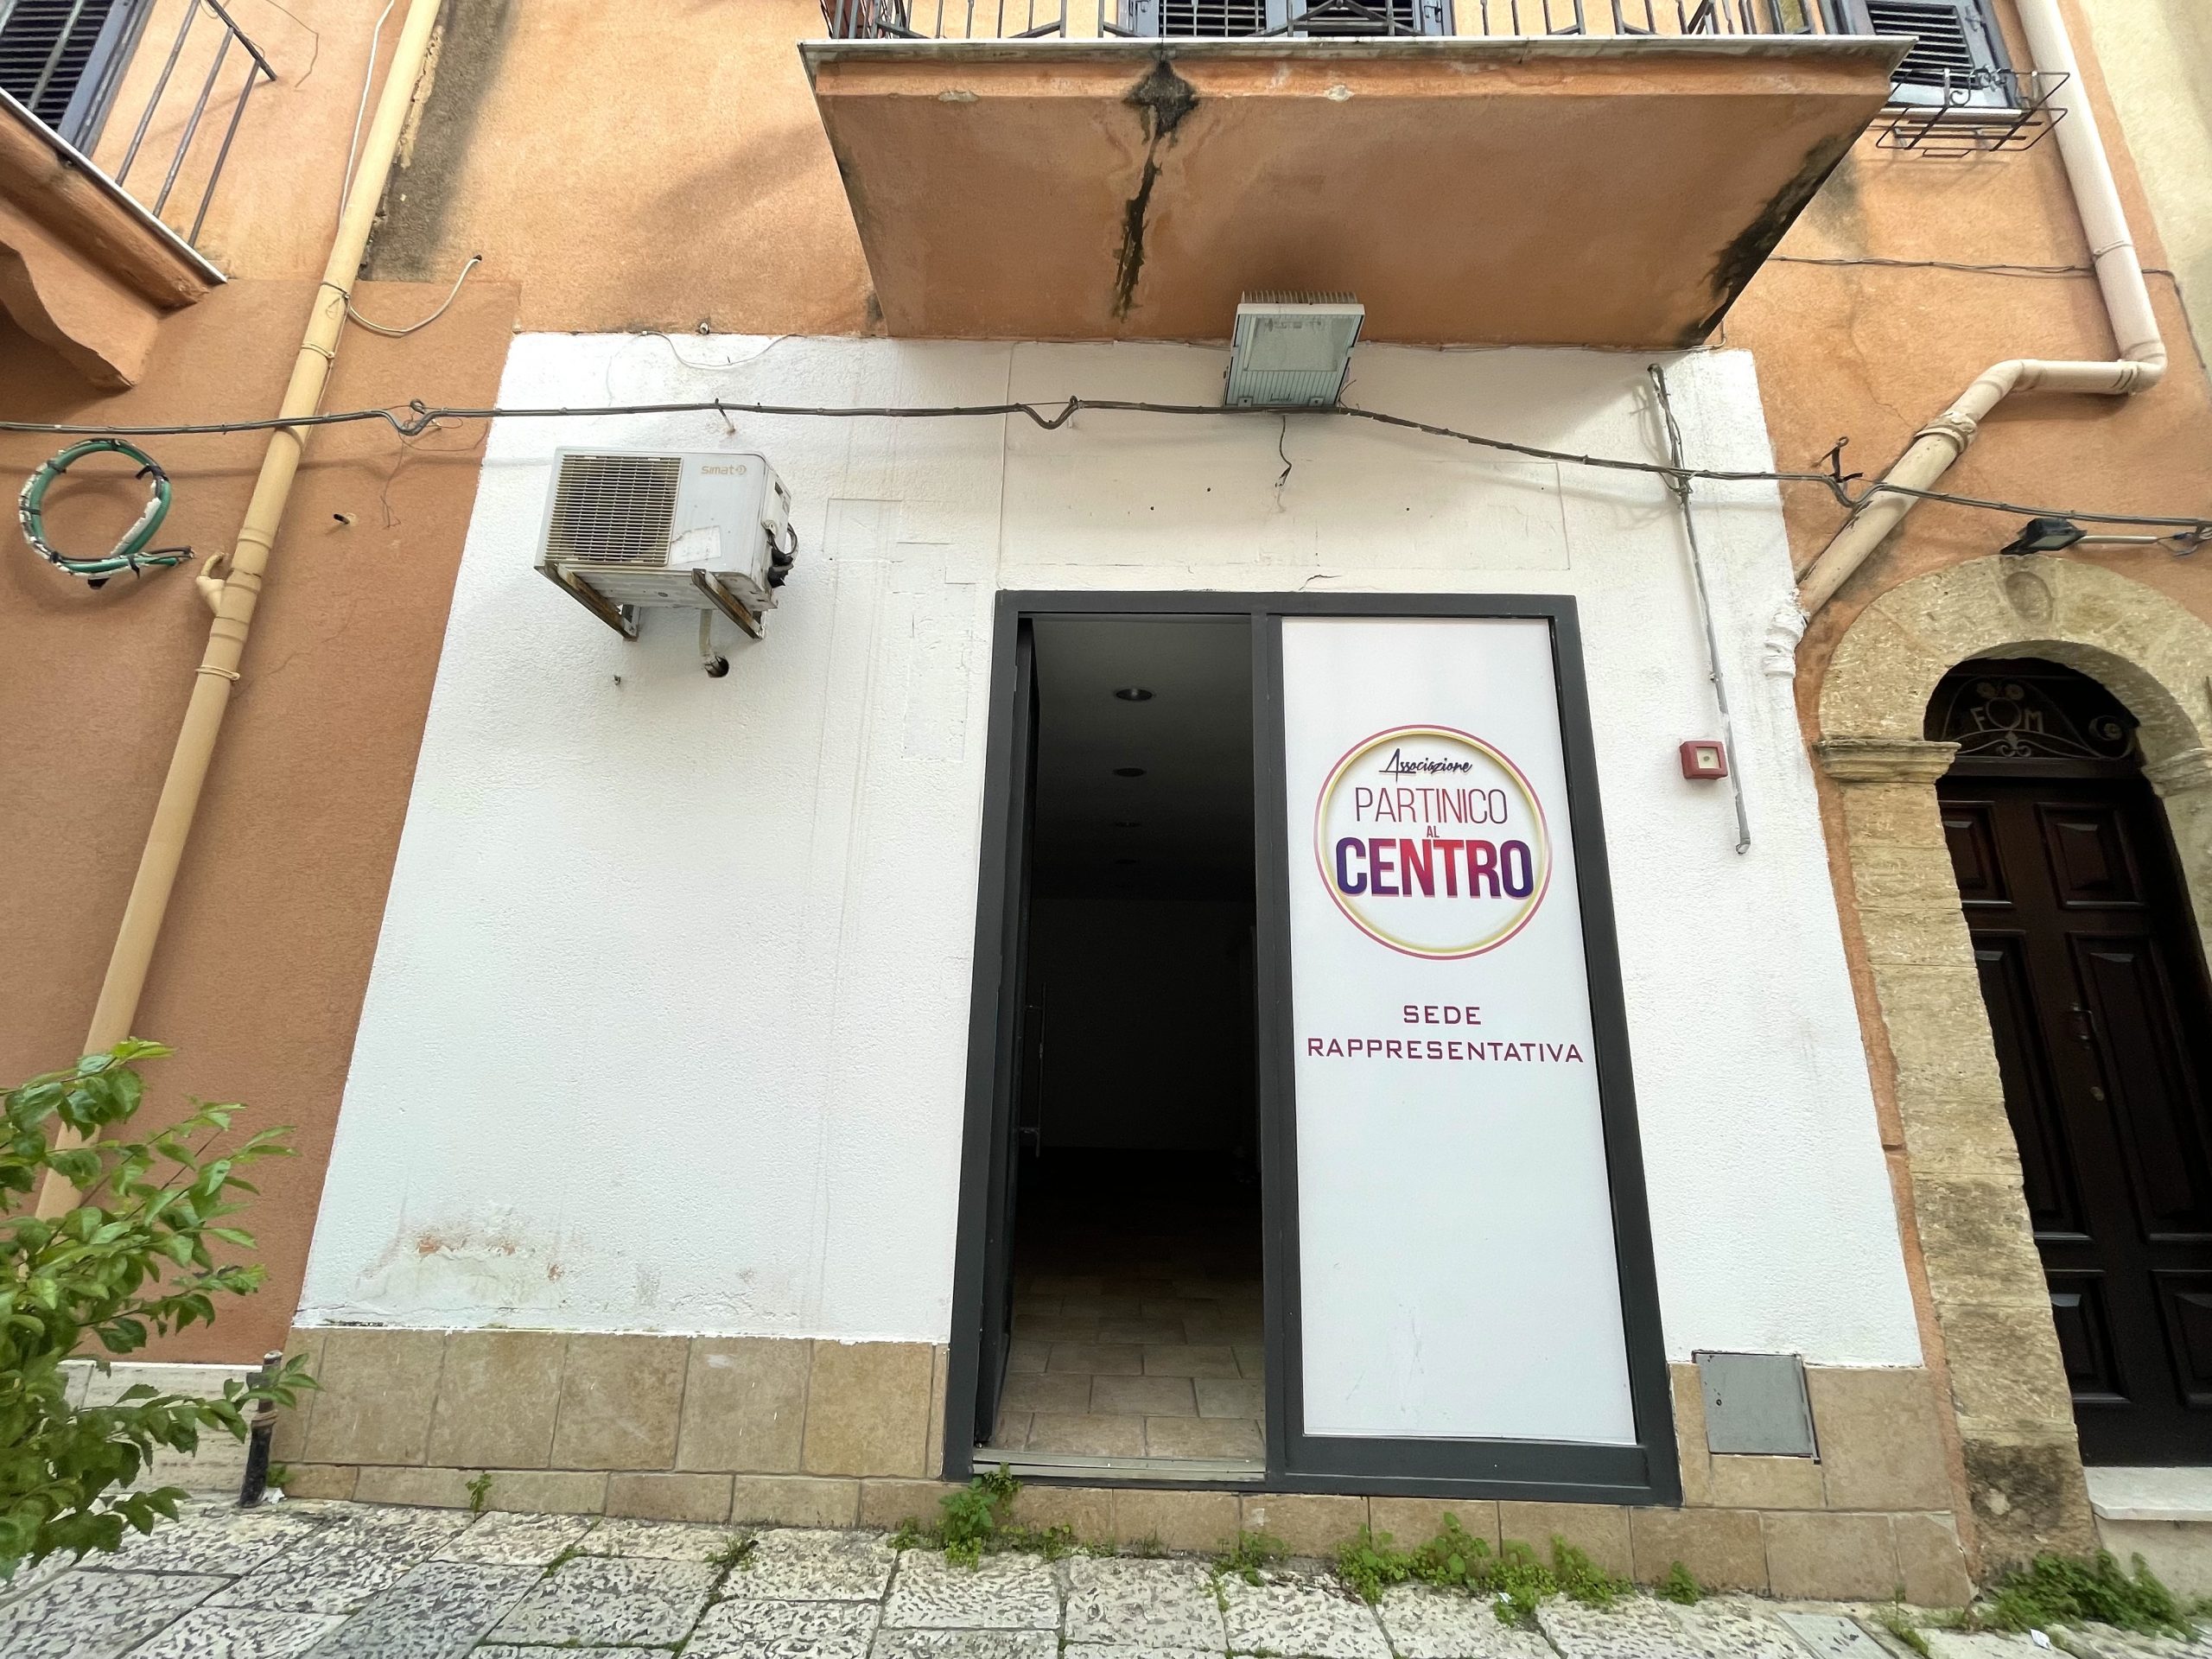 Locale commerciale in affitto a Partinico, Via F.sco Crispi